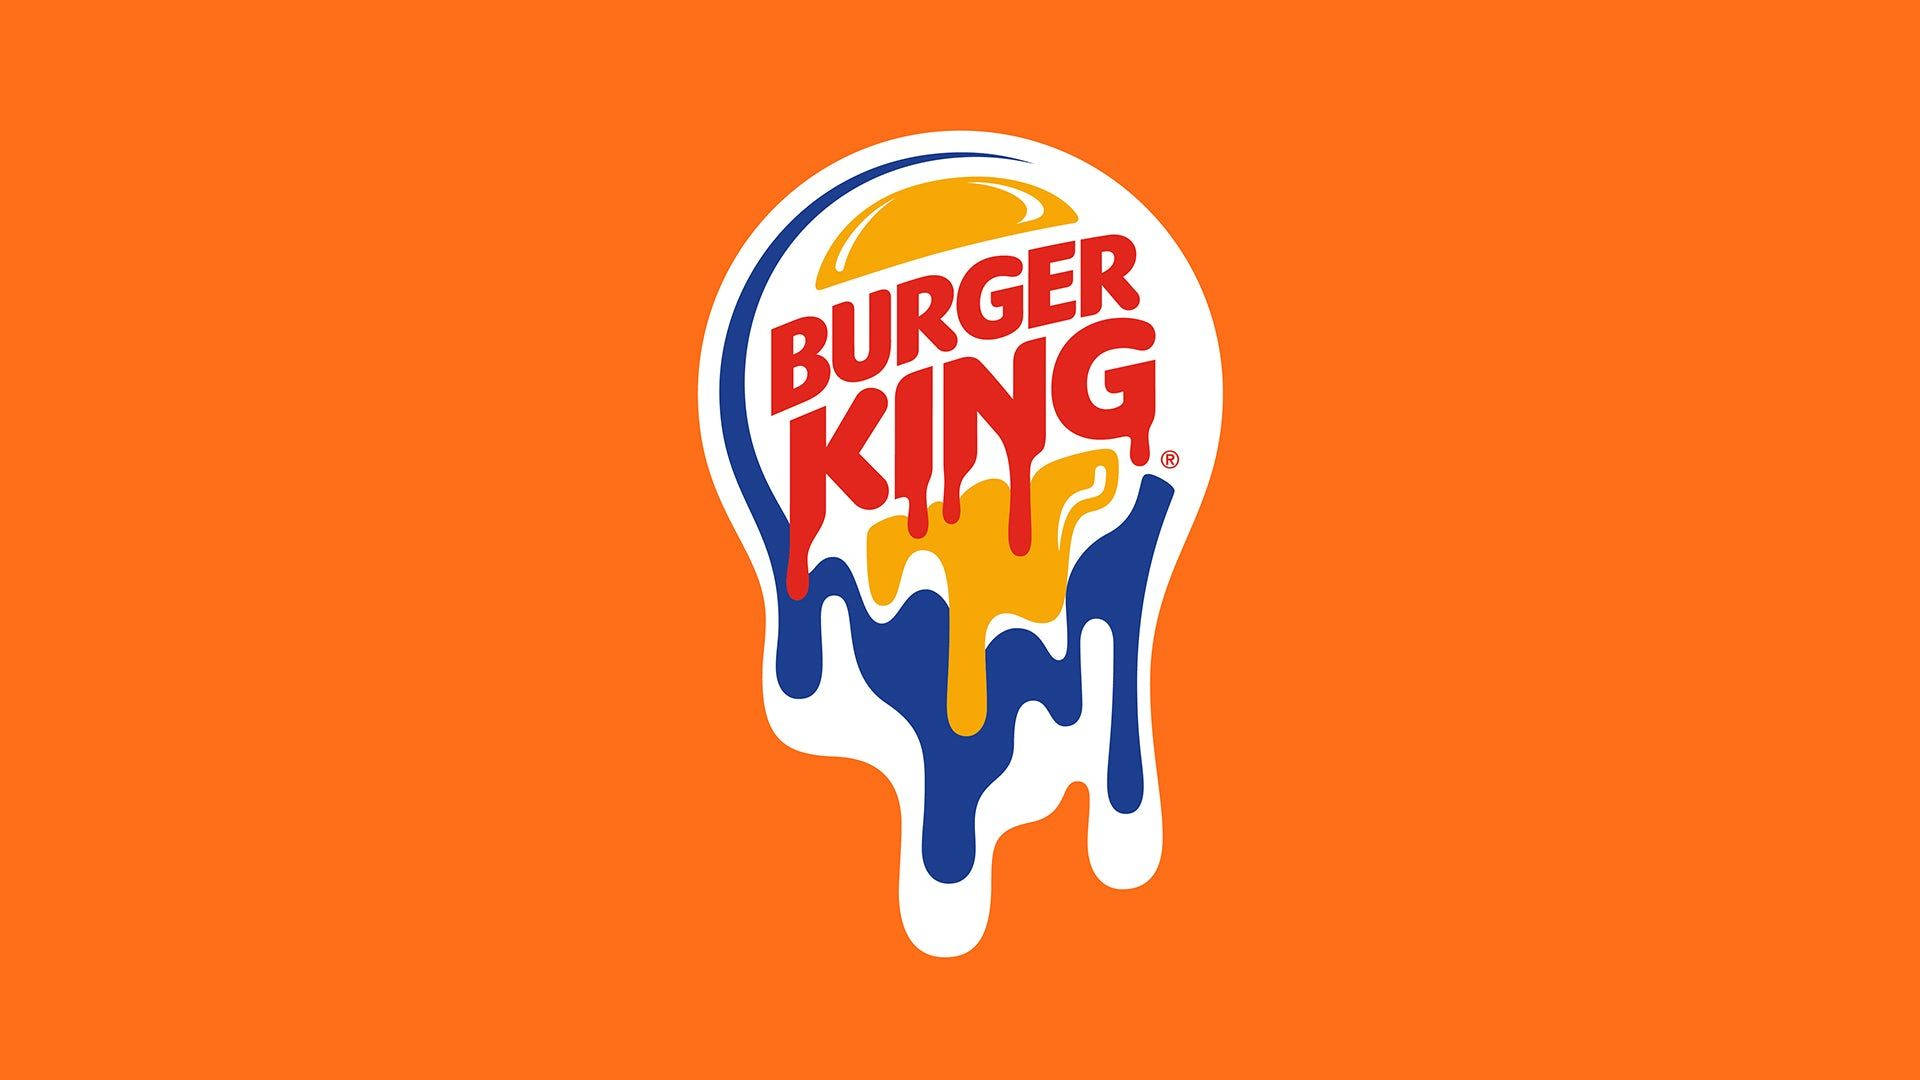 Verschmiertesburger King Logo Wallpaper